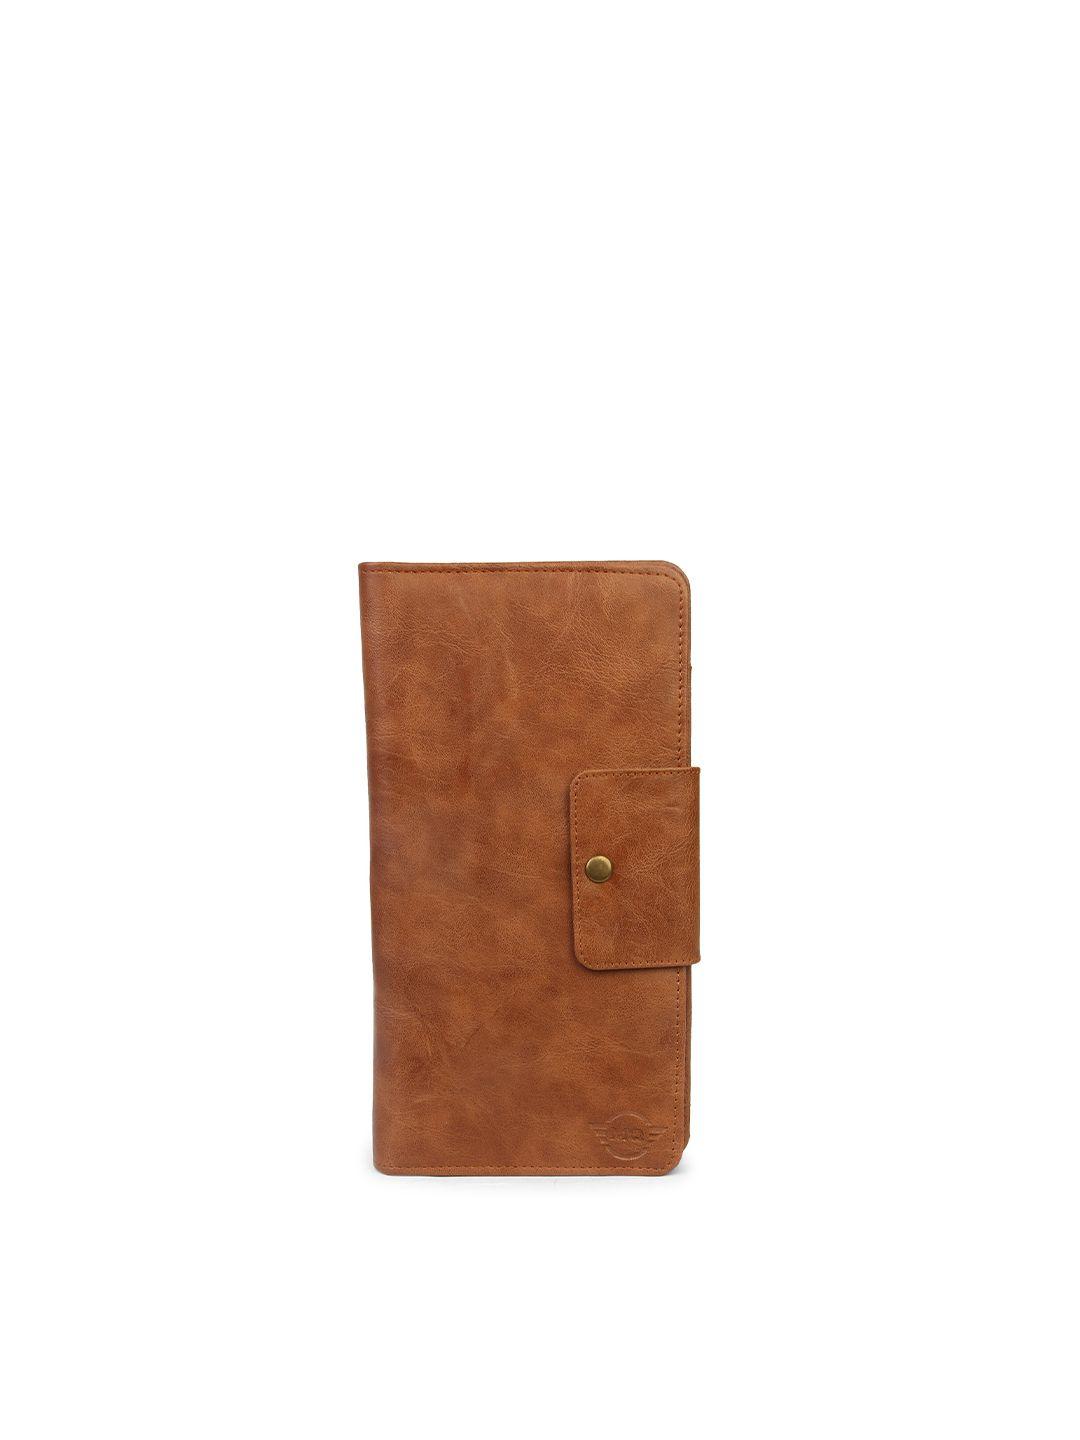 mutaqinoti unisex brown textured leather passport holder